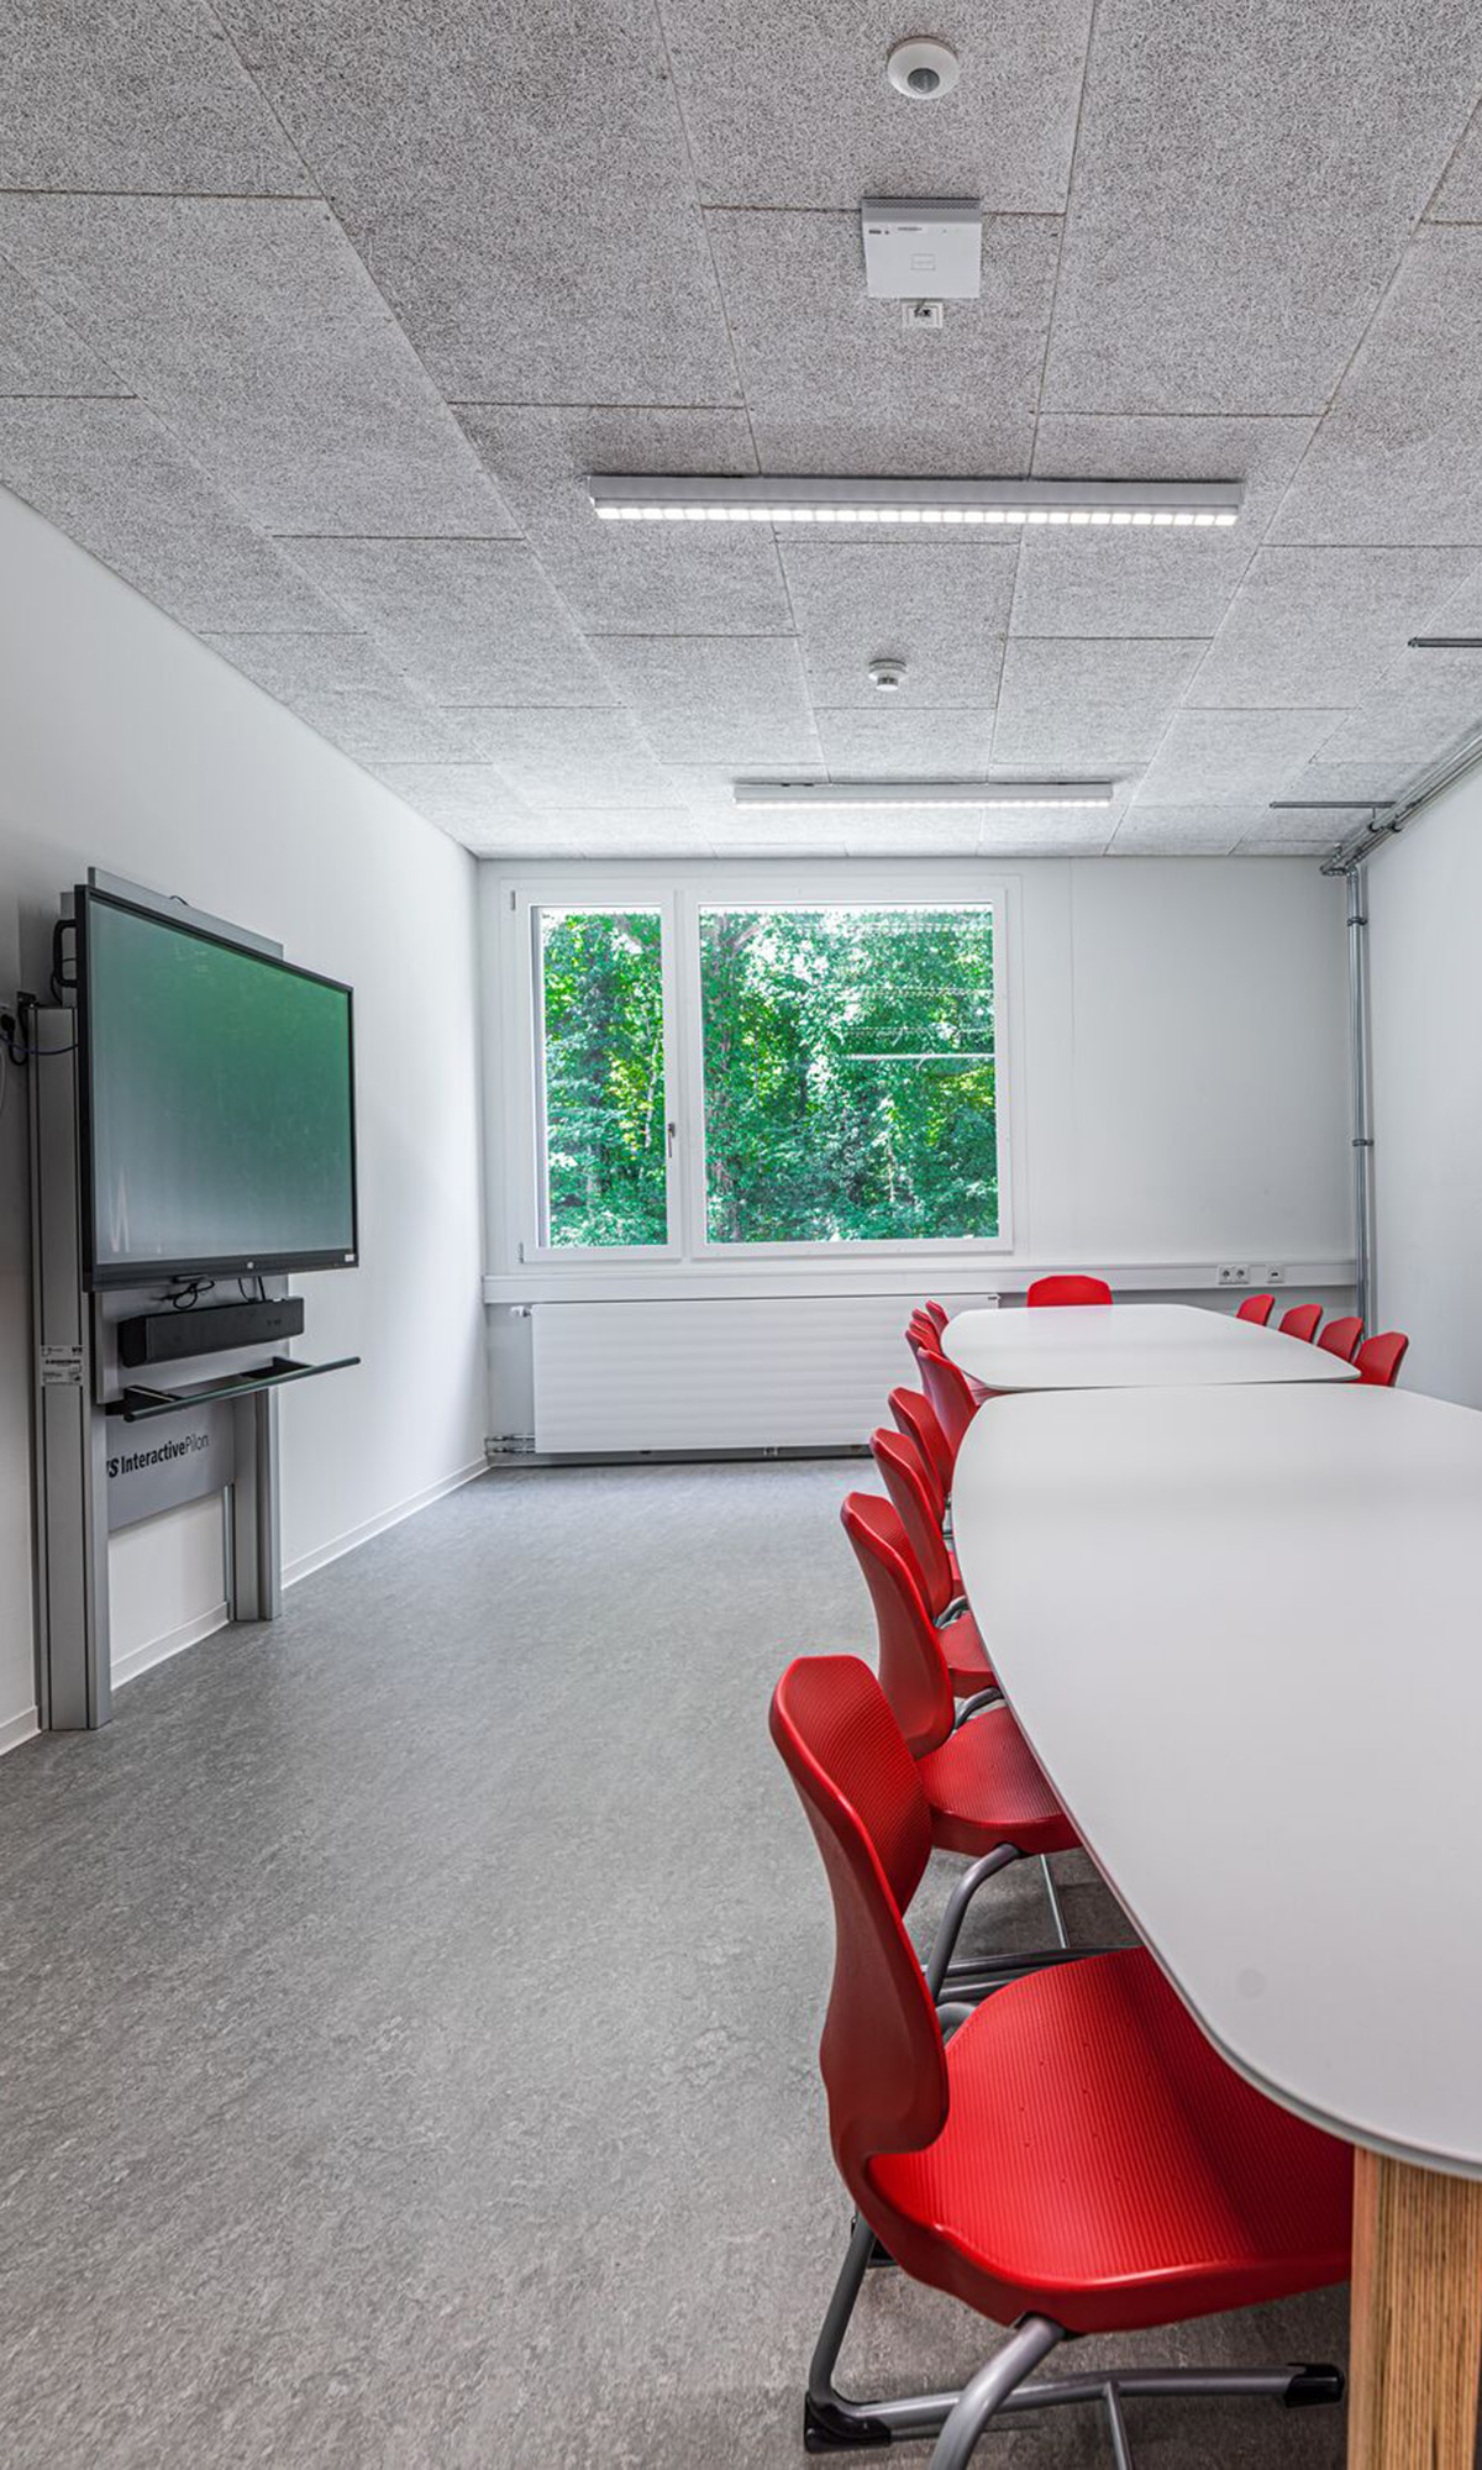 Vue d'une salle de classe de la nouvelle école de Mondorf